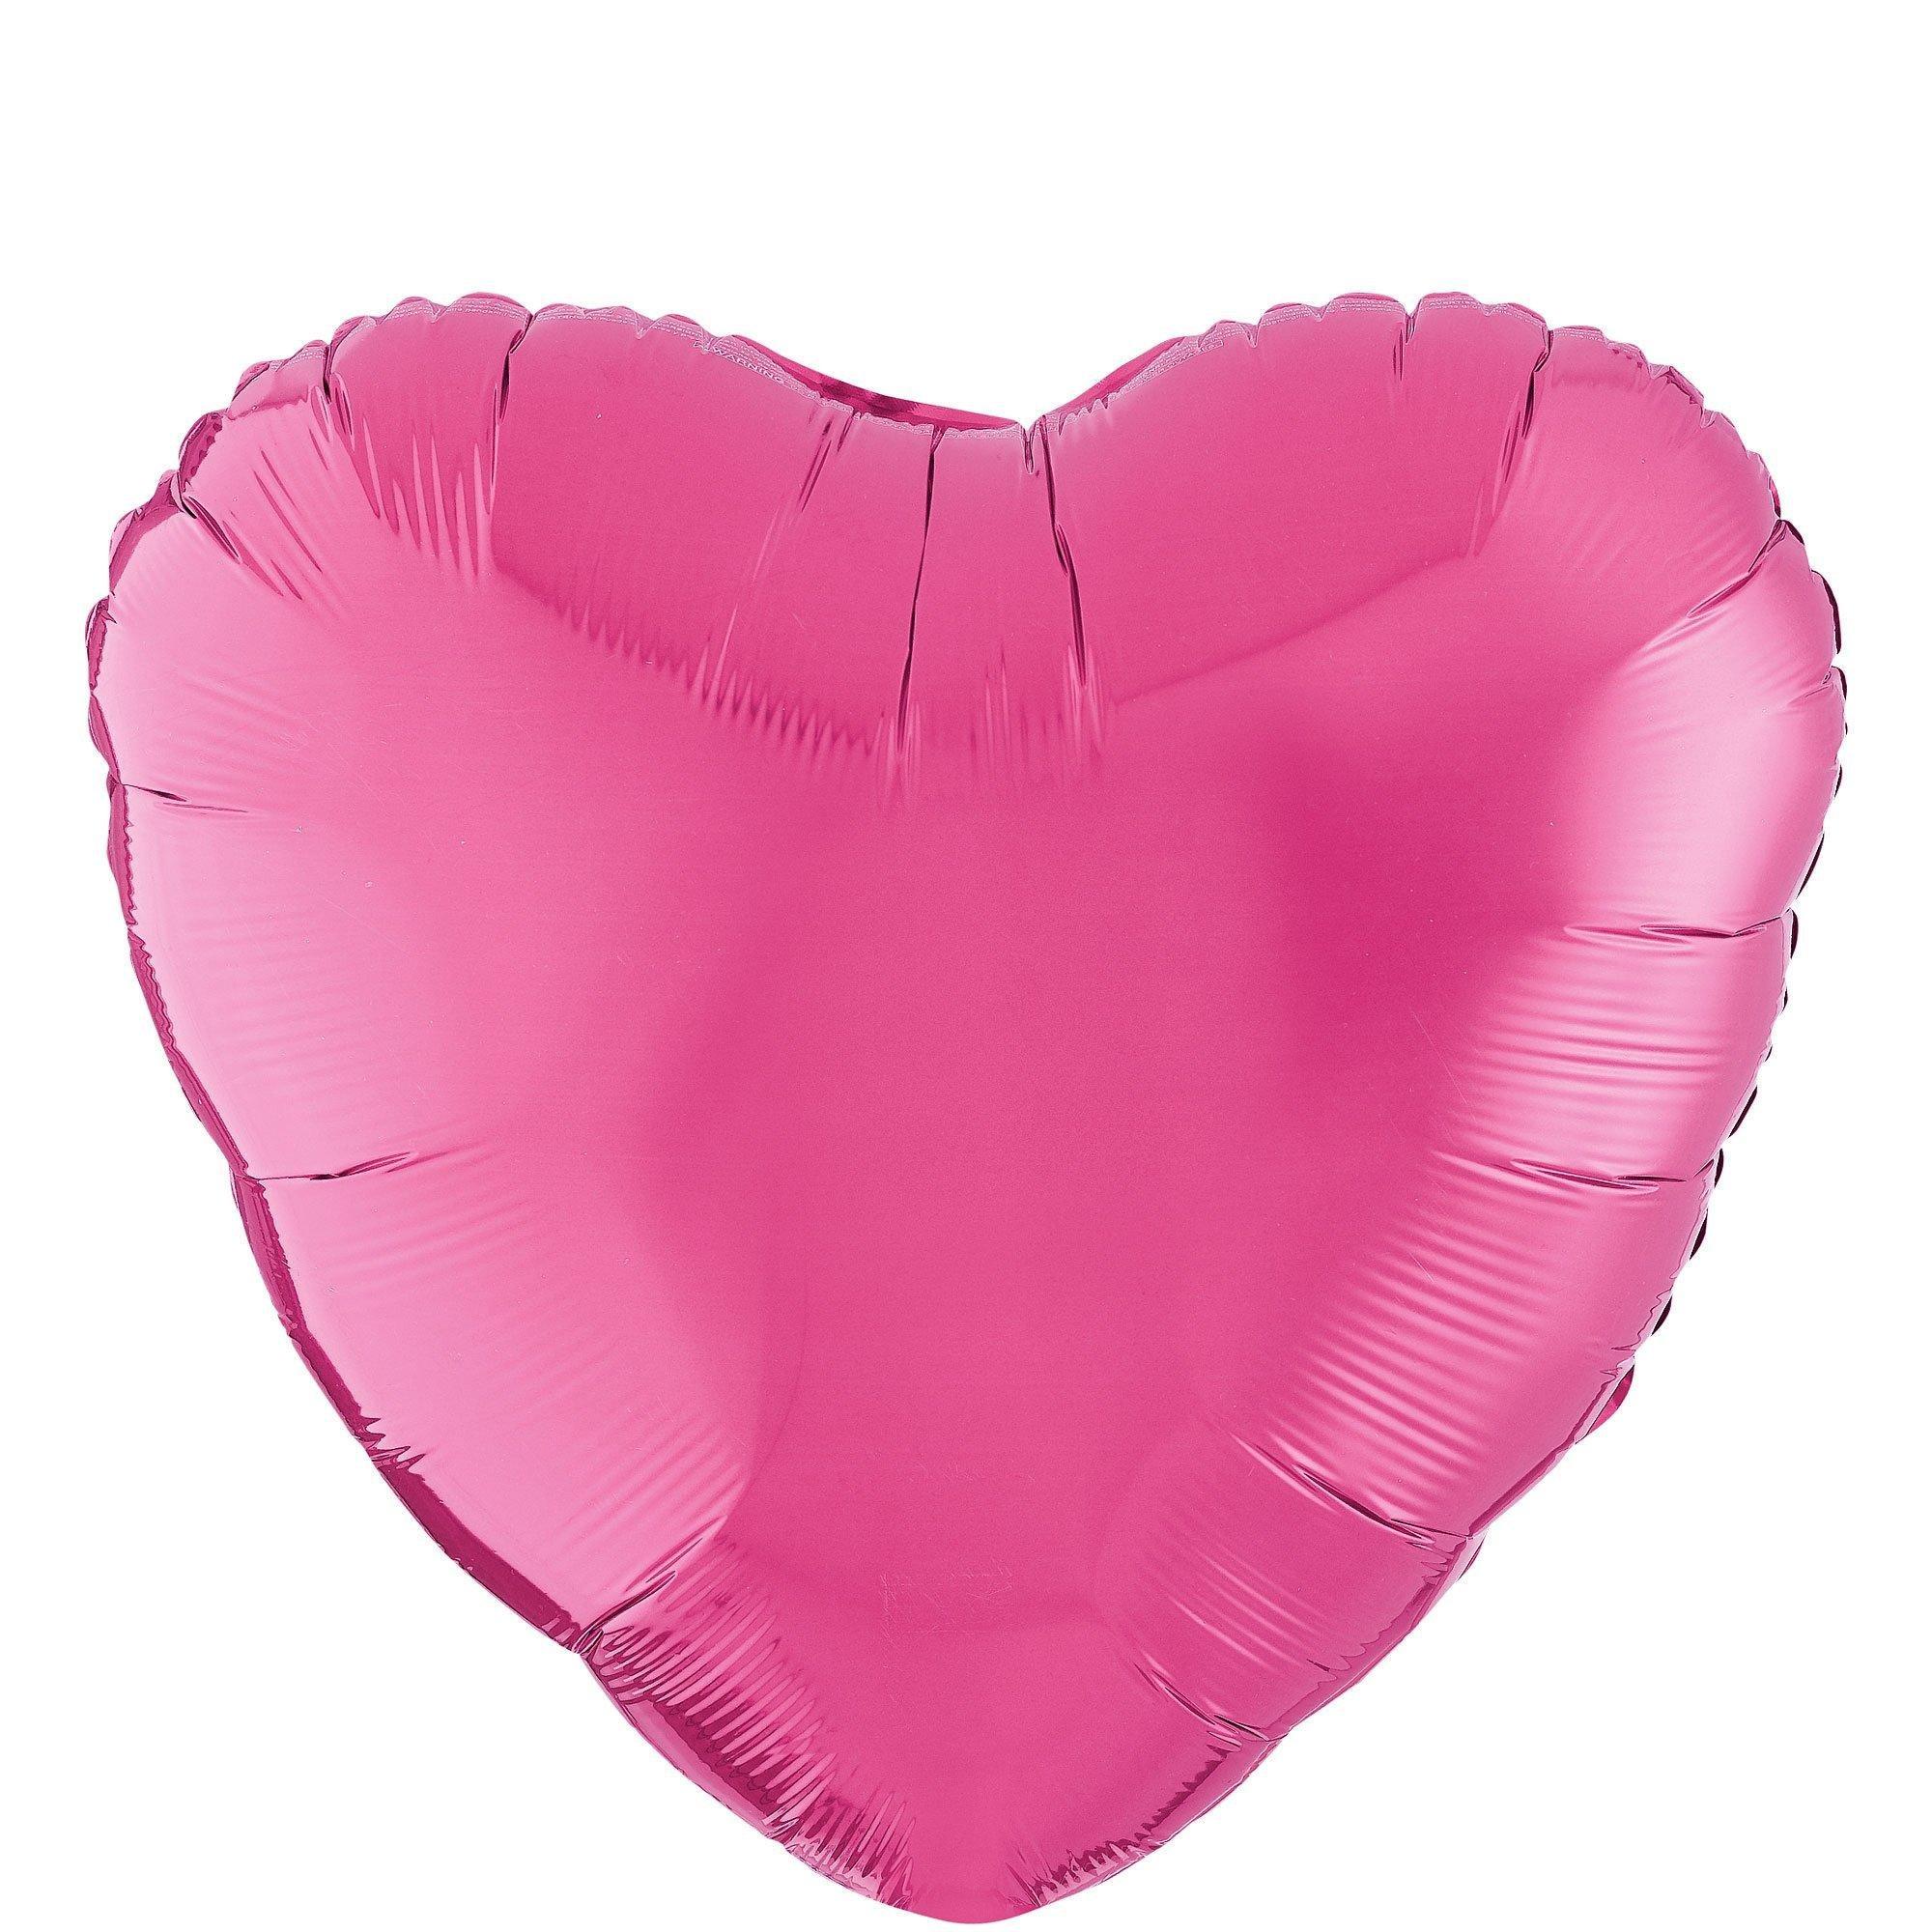 Pink, Lavender & Gold Foil Heart Balloon Bouquet, 12pc